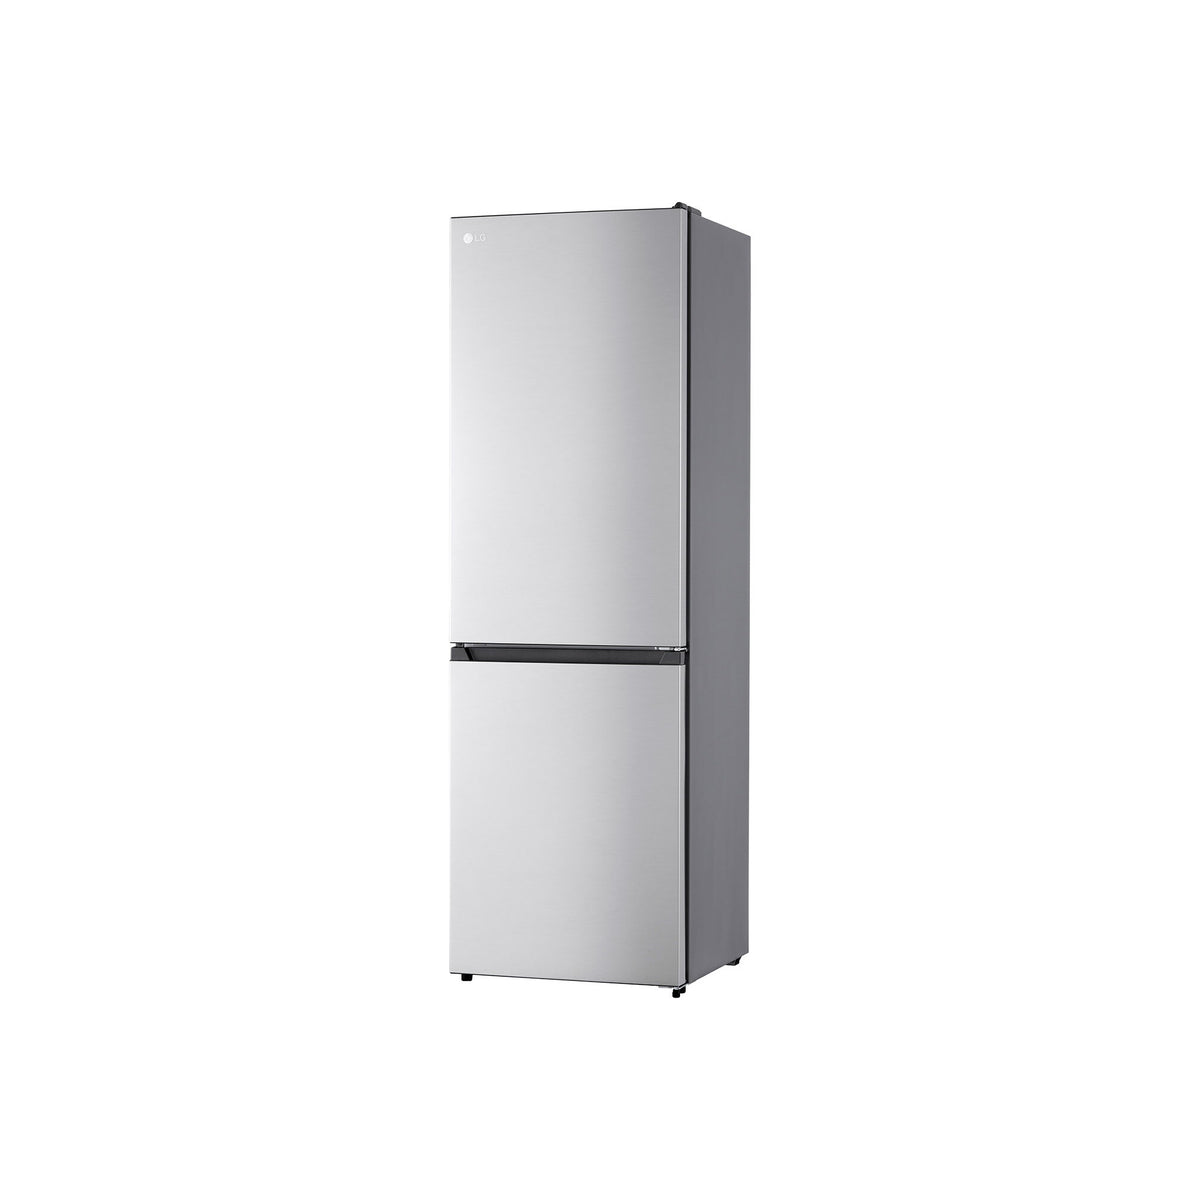 Kombinovaná lednice s mrazákem dole LG GBM21HSADH